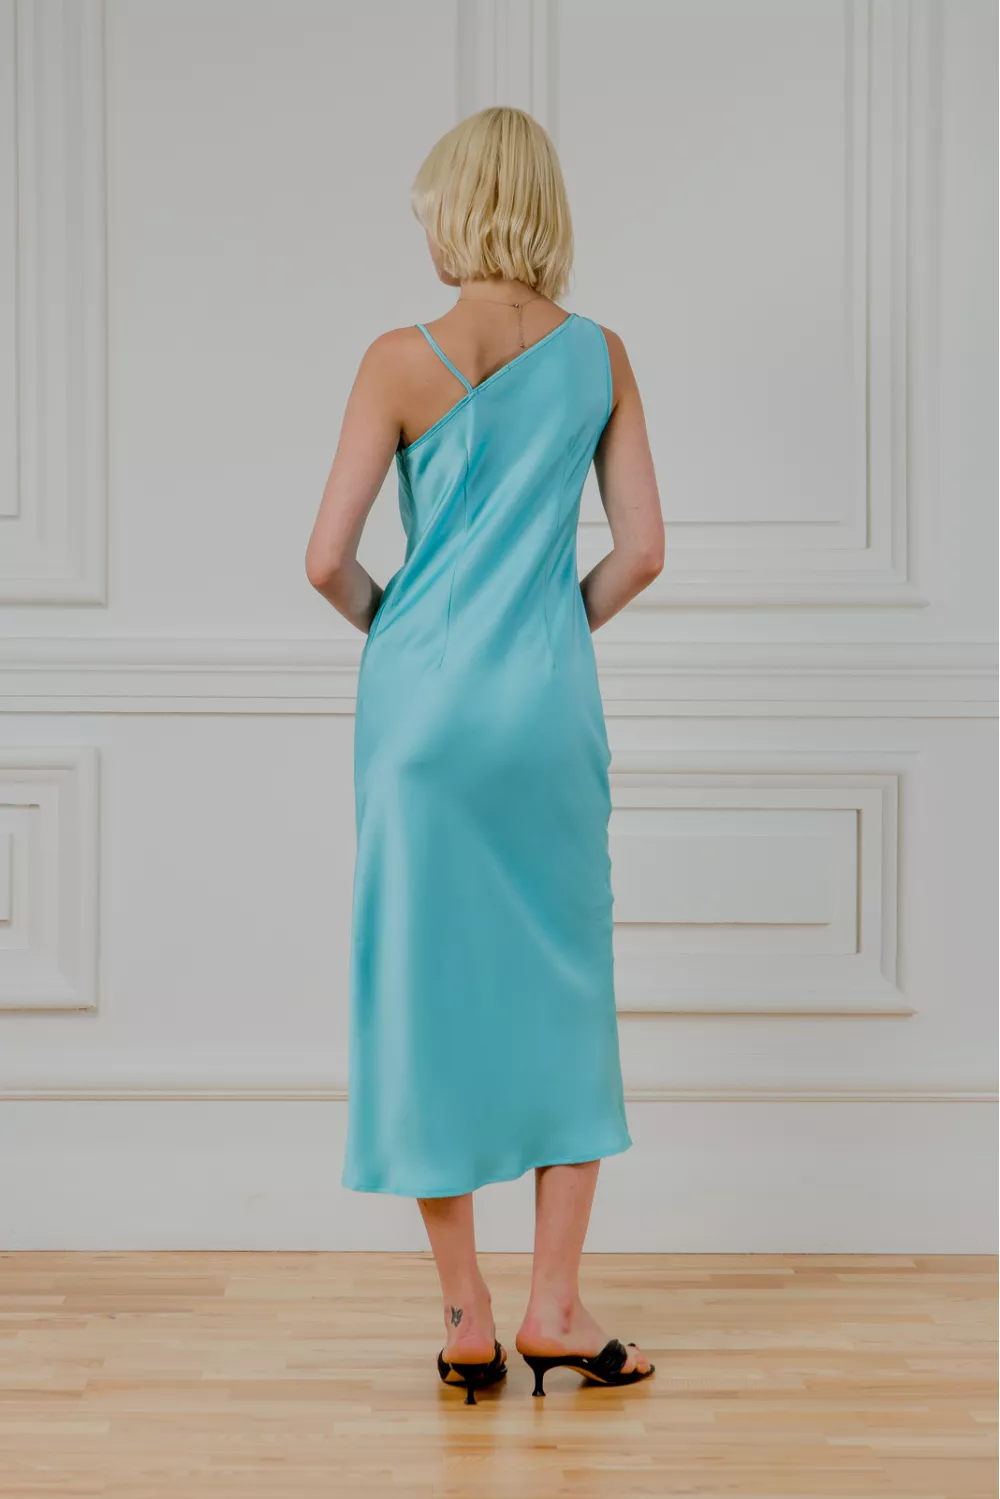 Ассиметричный атласный платье Боскония - фото 6